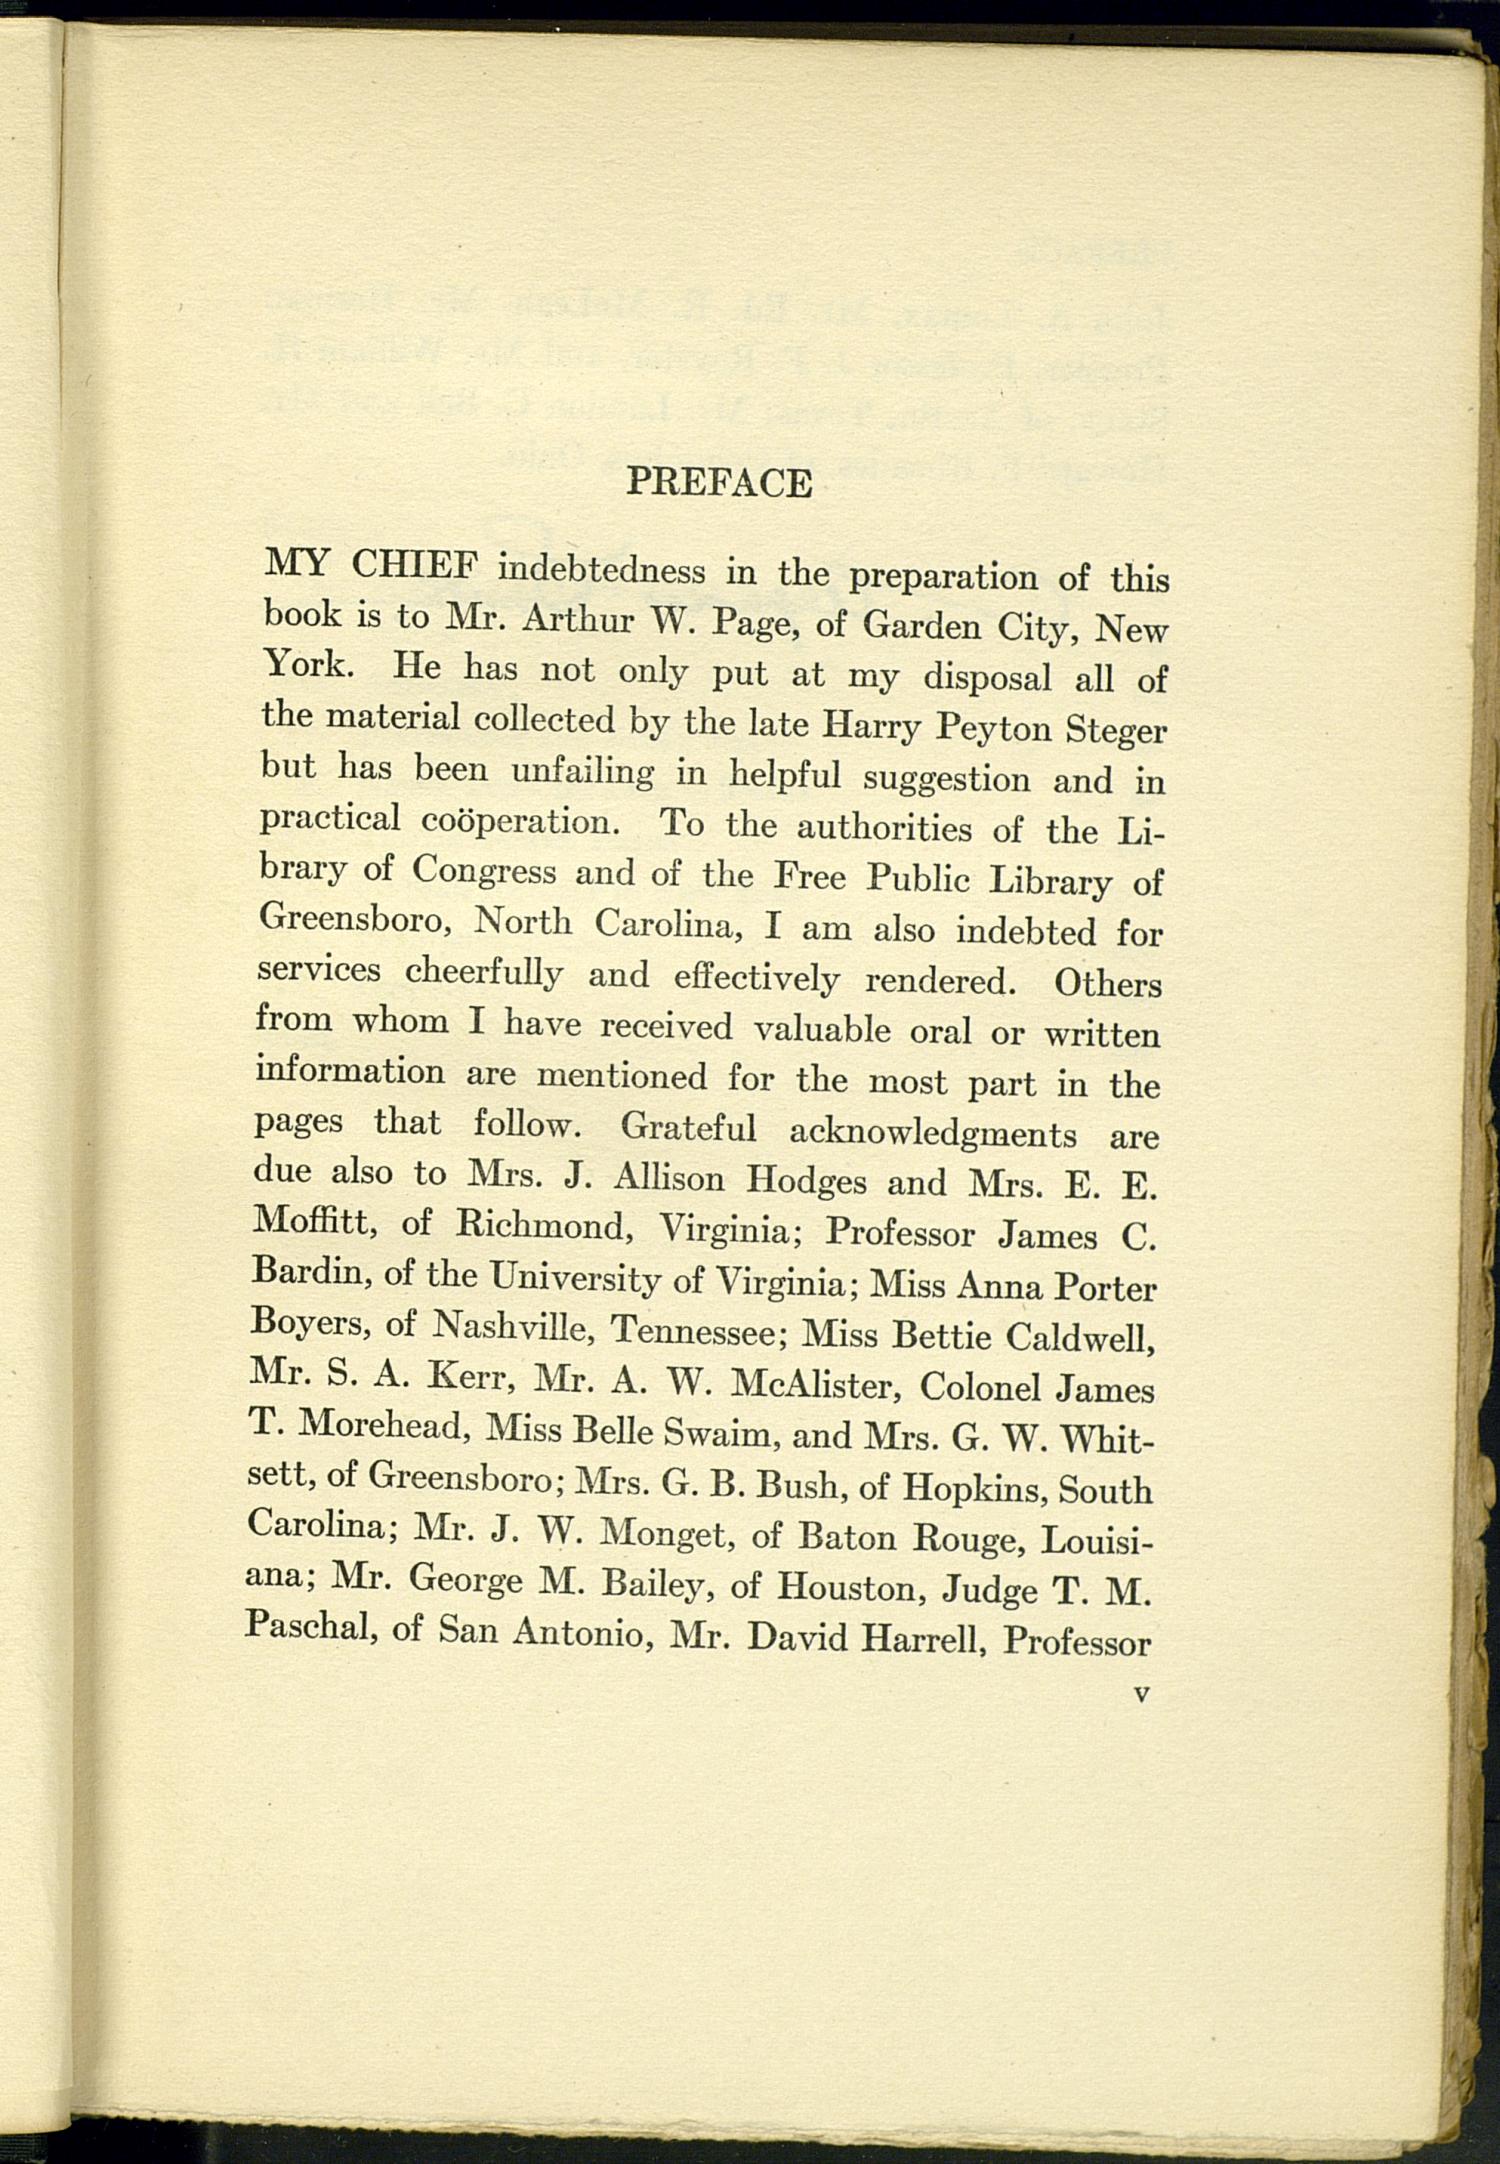 O. Henry Biography
                                                
                                                    Preface
                                                